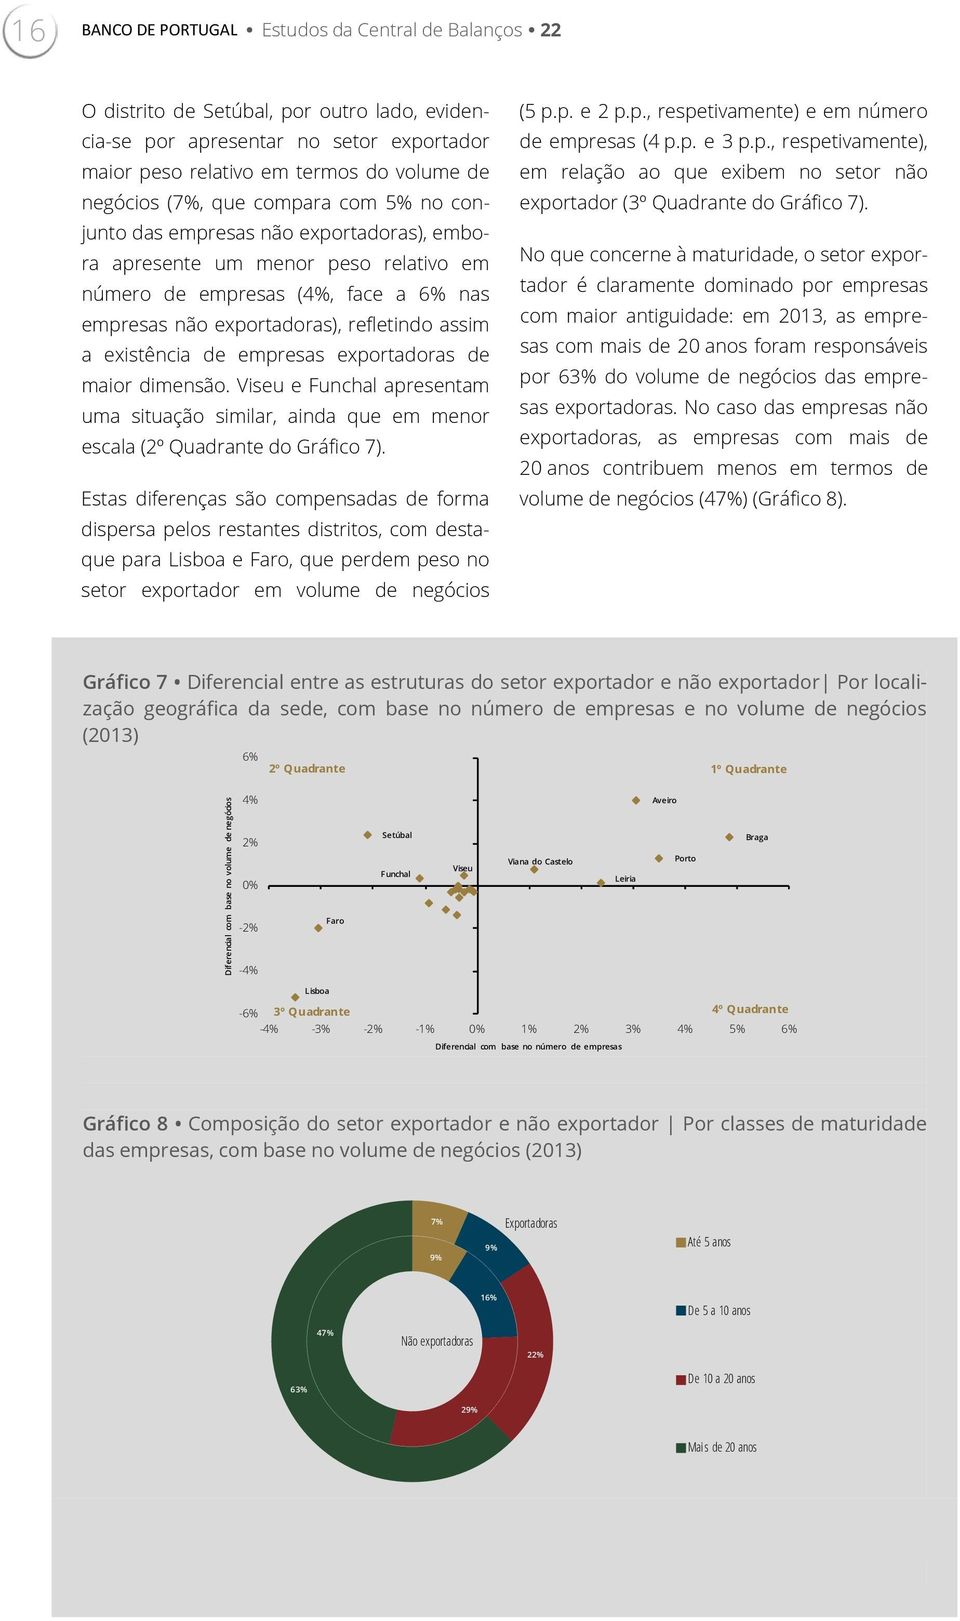 existência de empresas exportadoras de maior dimensão. Viseu e Funchal apresentam uma situação similar, ainda que em menor escala (2º Quadrante do Gráfico 7).